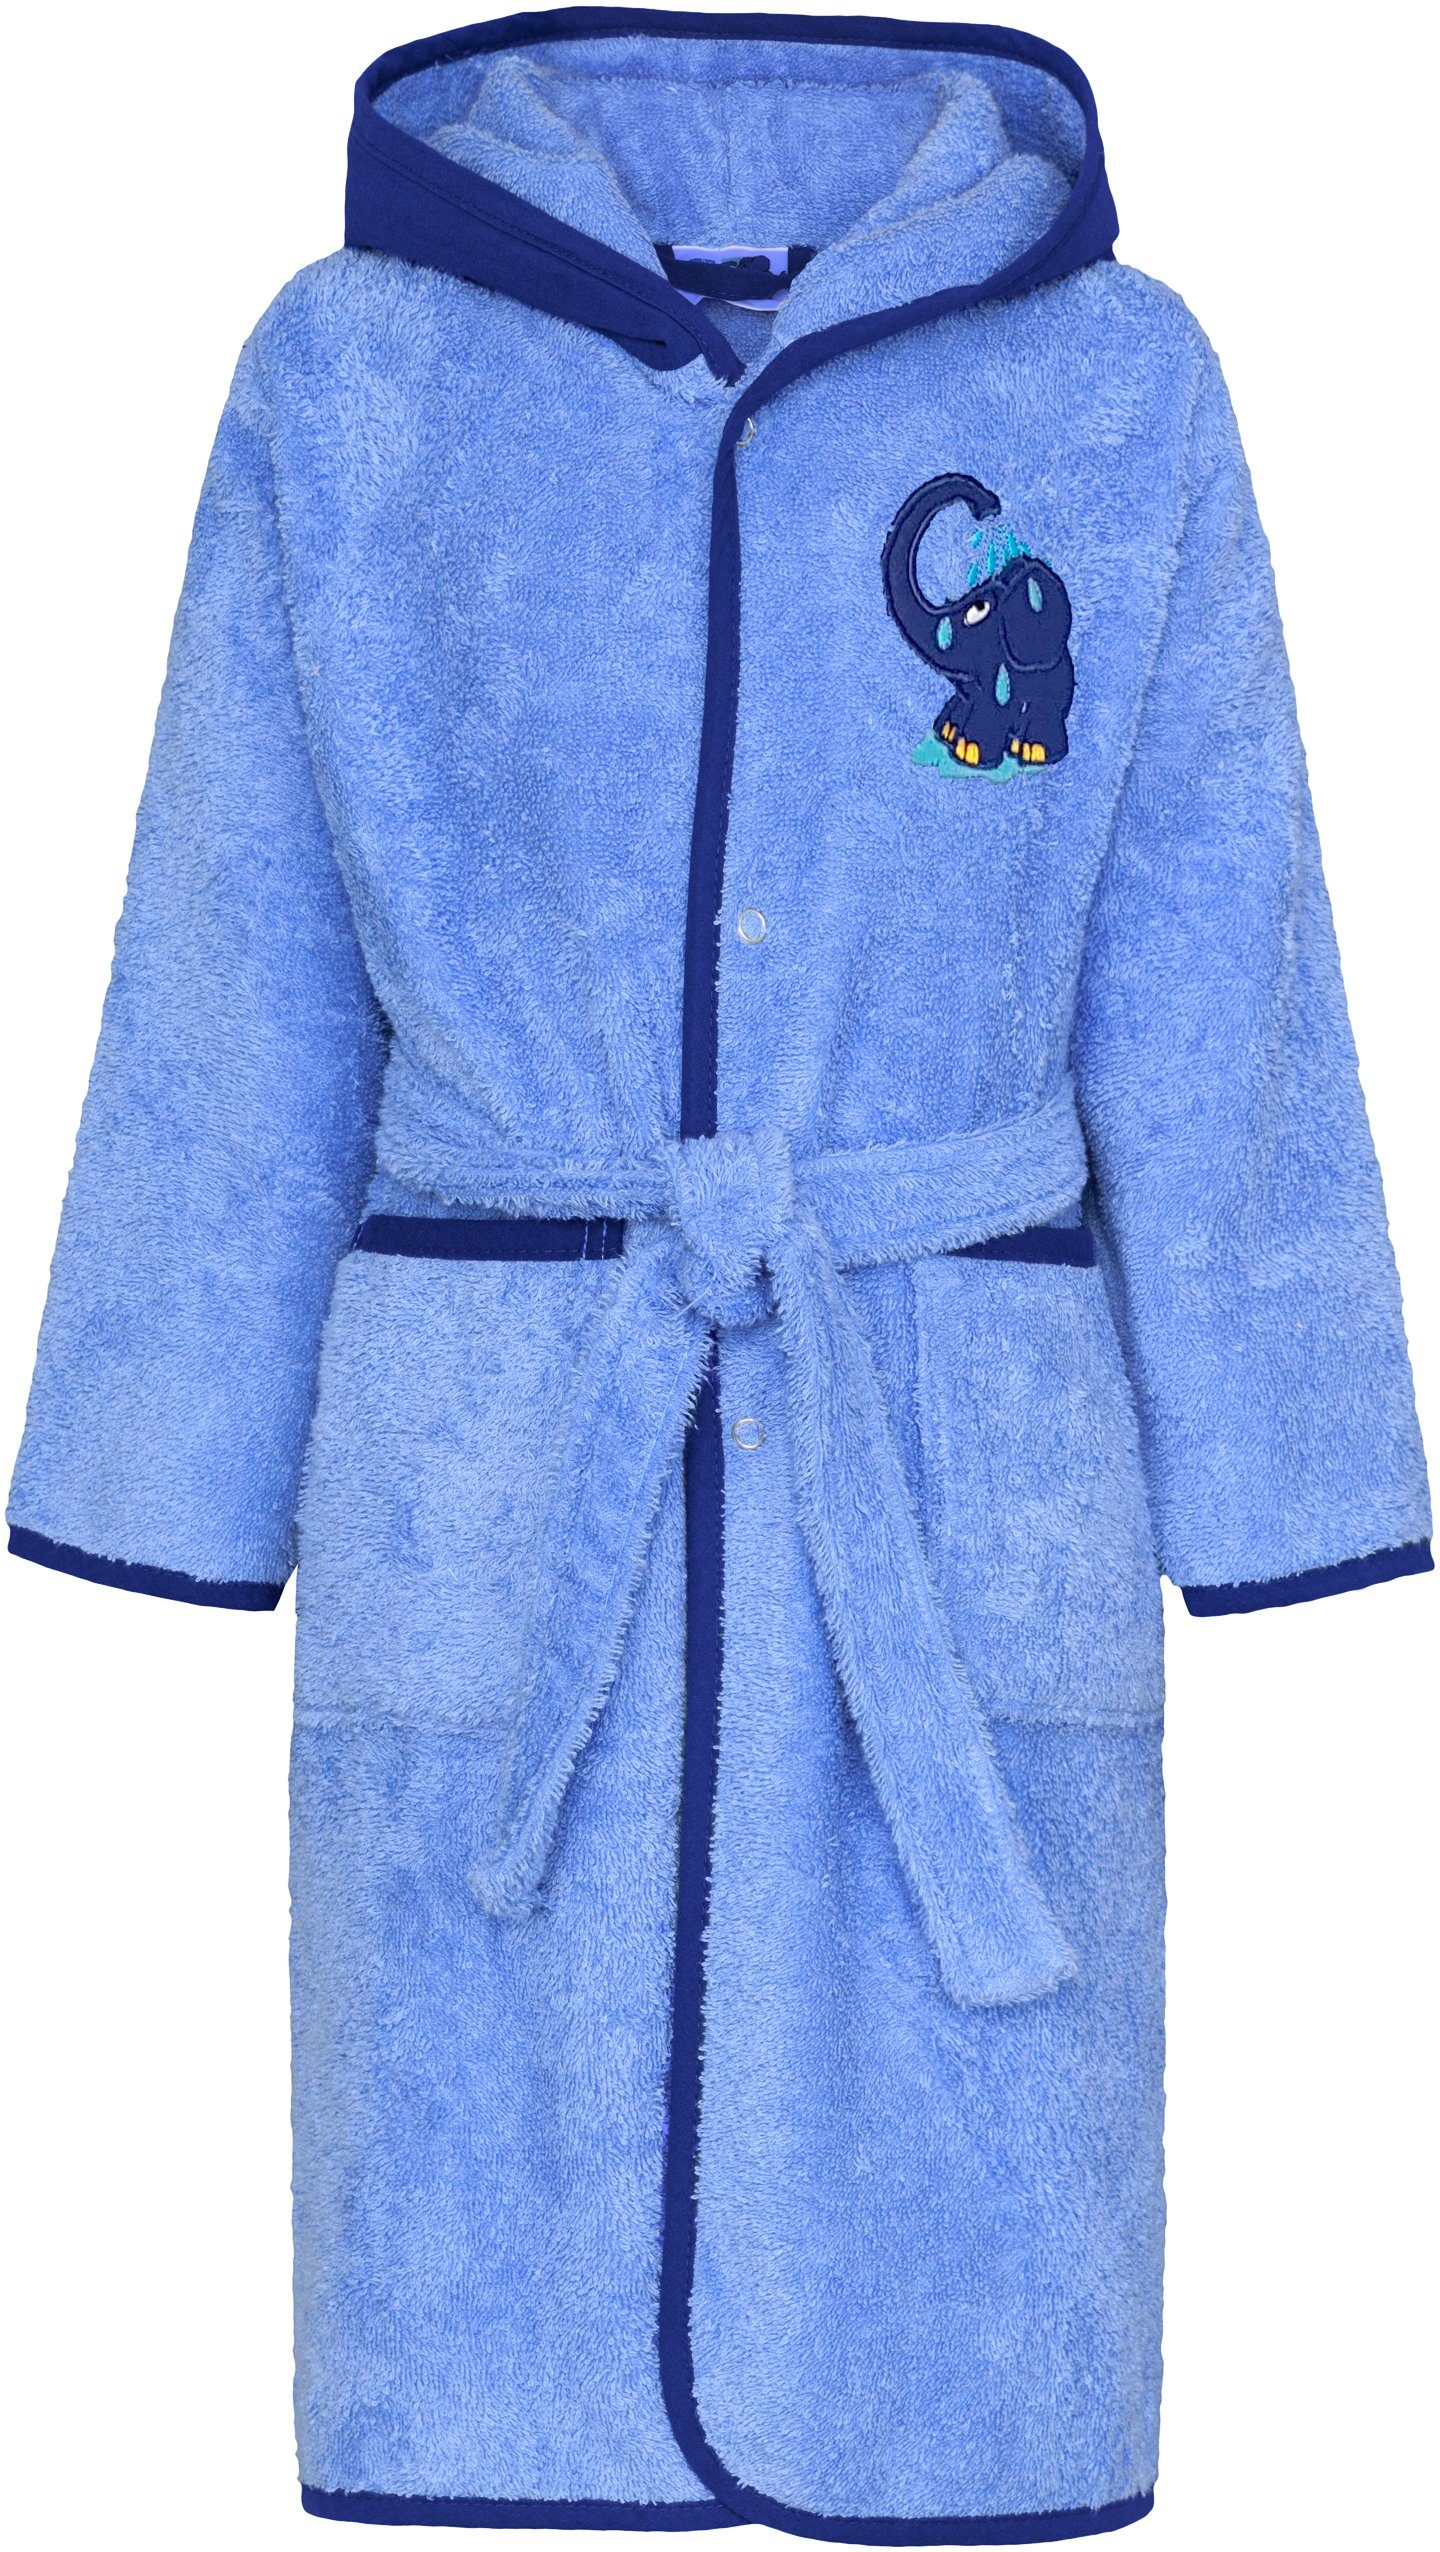 Smithy Kinderbademantel mit dem blauen Elefanten, Baumwolle, Baumwolle, Kapuze, Gürtel, Knöpfe, made in Europe